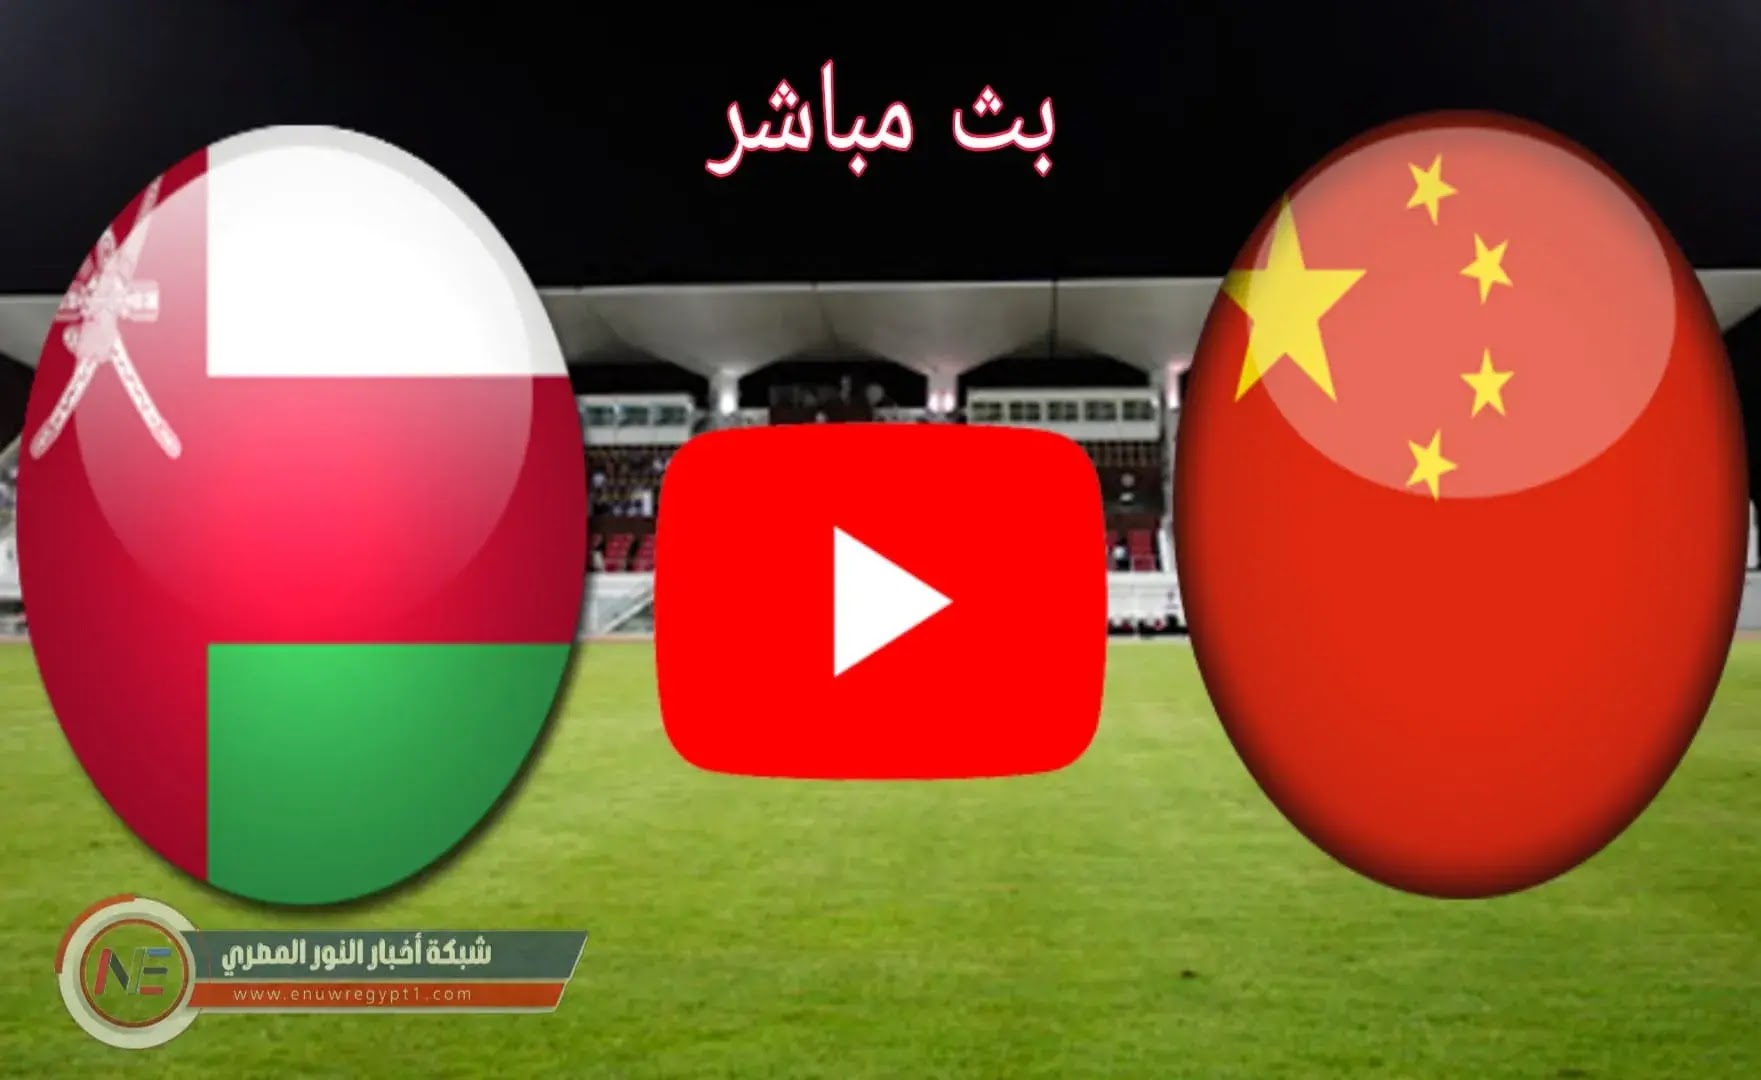 كورة لايف بث مباشر يوتيوب || مشاهدة مباراة عمان و الصين بث مباشر اليوم 11-11-2021 في تصفيات آسيا المؤهلة الي كأس العالم بجودة عالية